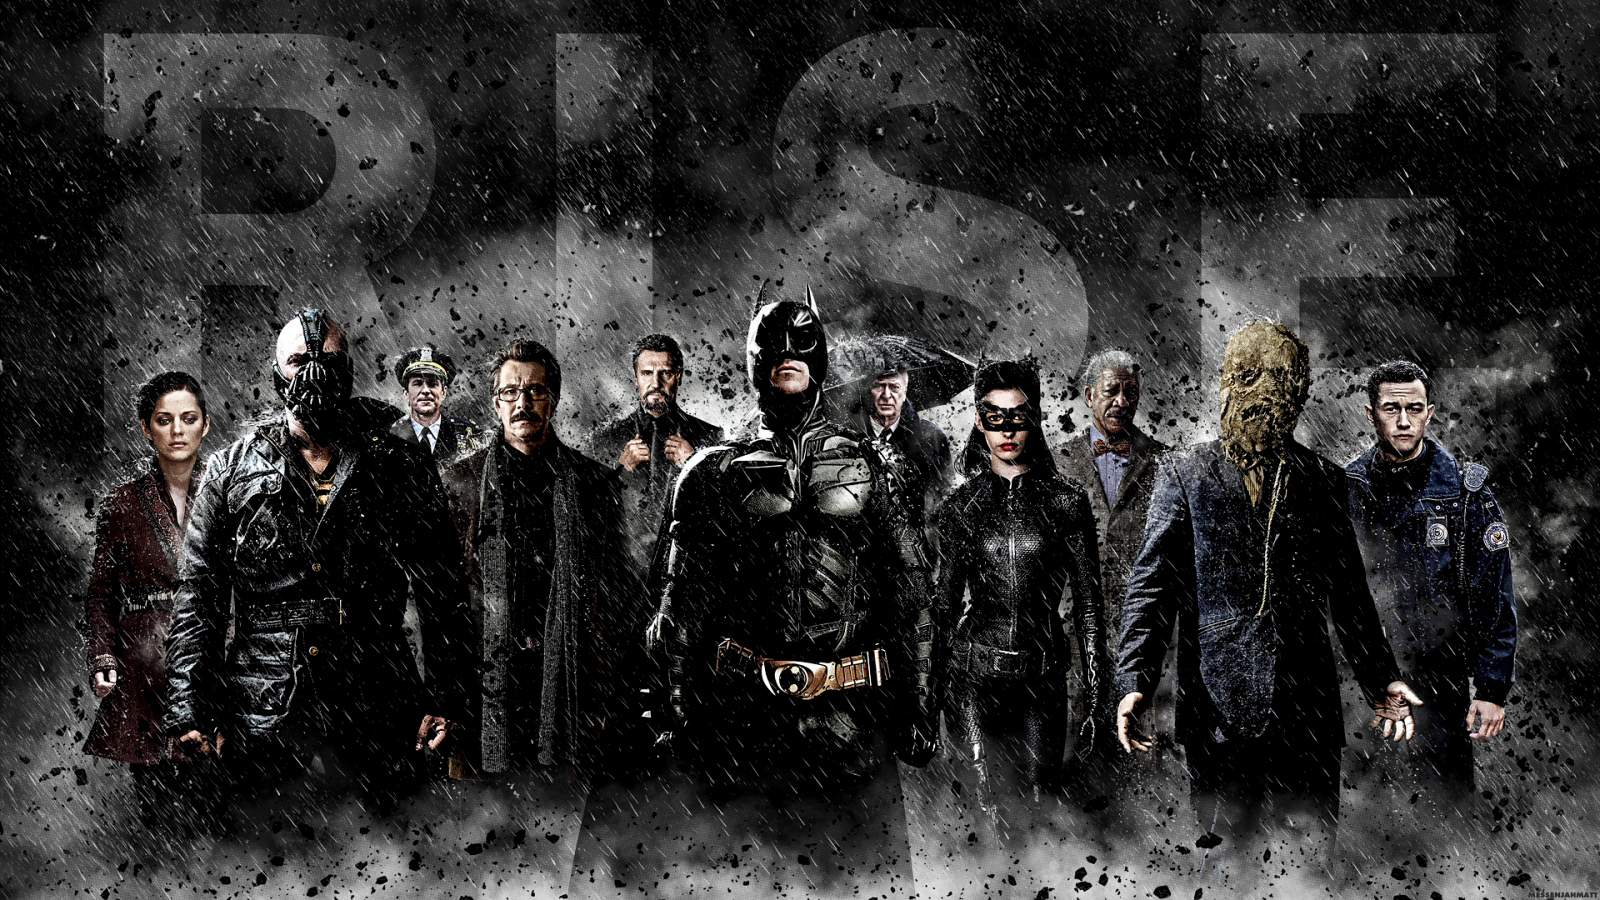 Batman The Dark Knight Rises 2012 HD Poster Wallpapers 1600x900